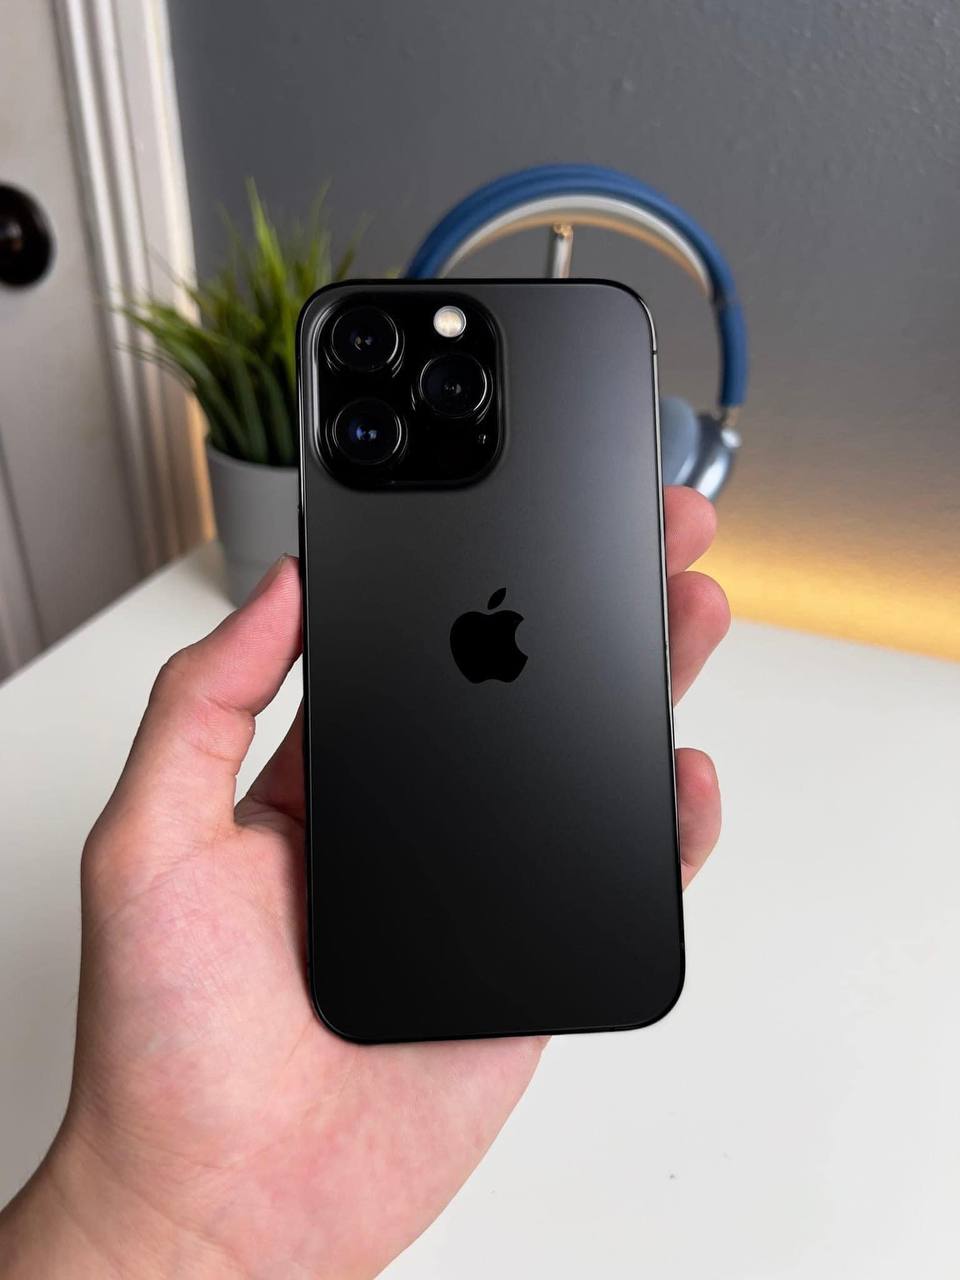 Cùng ngắm iPhone 14 Pro với thiết kế độc đáo và màu sắc tuyệt đẹp! Sản phẩm này chắc chắn sẽ khiến bạn phải trầm trồ ngay từ cái nhìn đầu tiên.